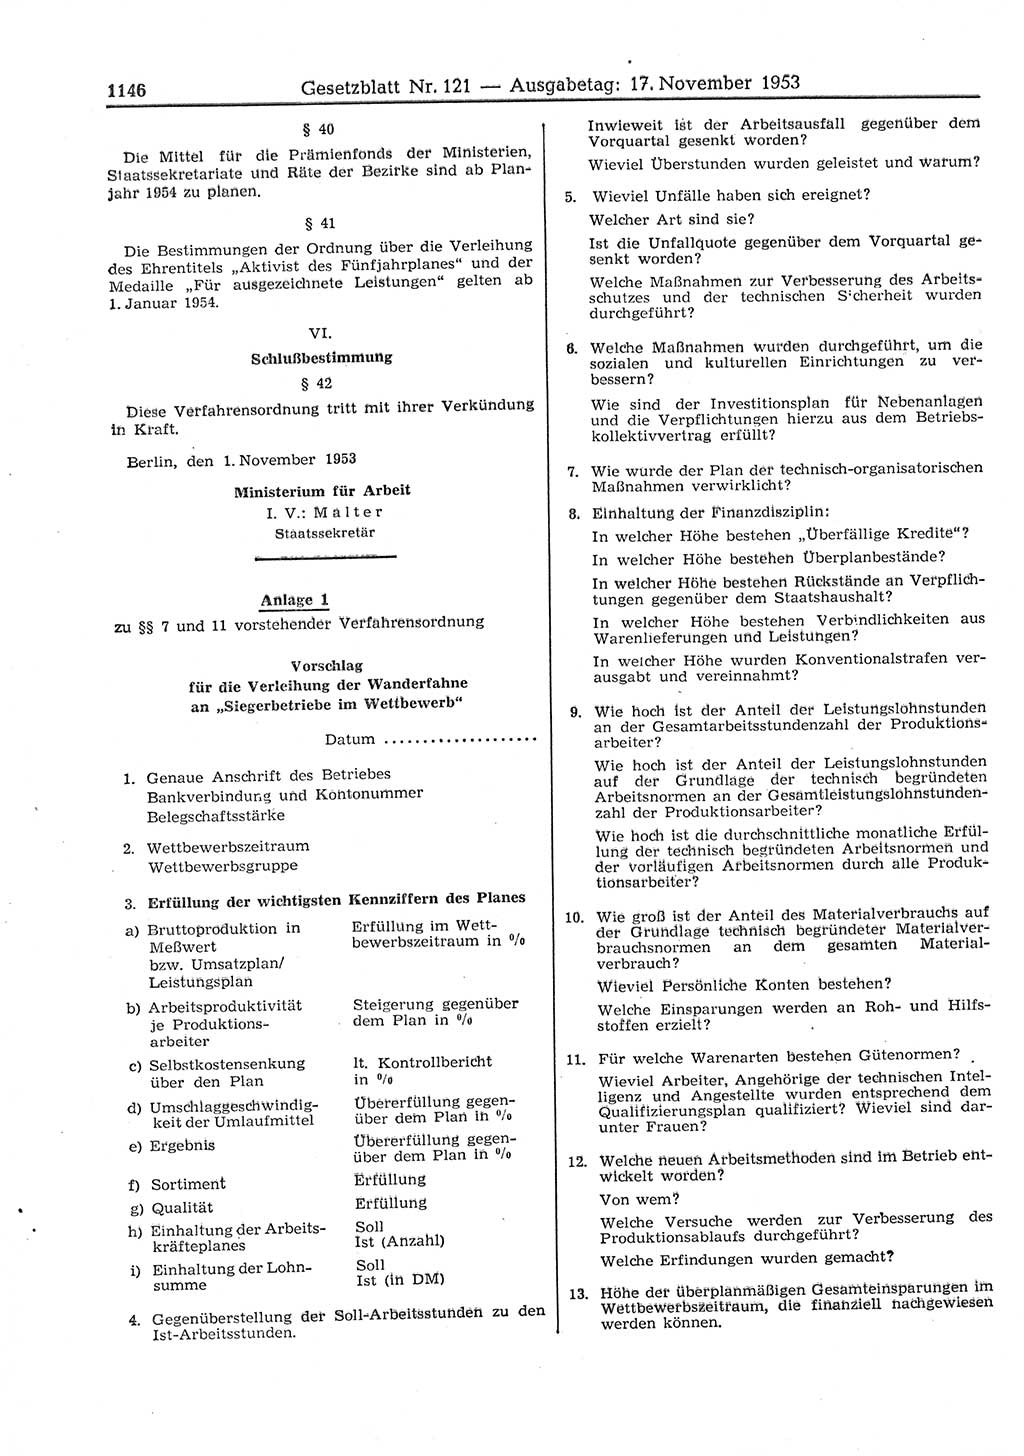 Gesetzblatt (GBl.) der Deutschen Demokratischen Republik (DDR) 1953, Seite 1146 (GBl. DDR 1953, S. 1146)